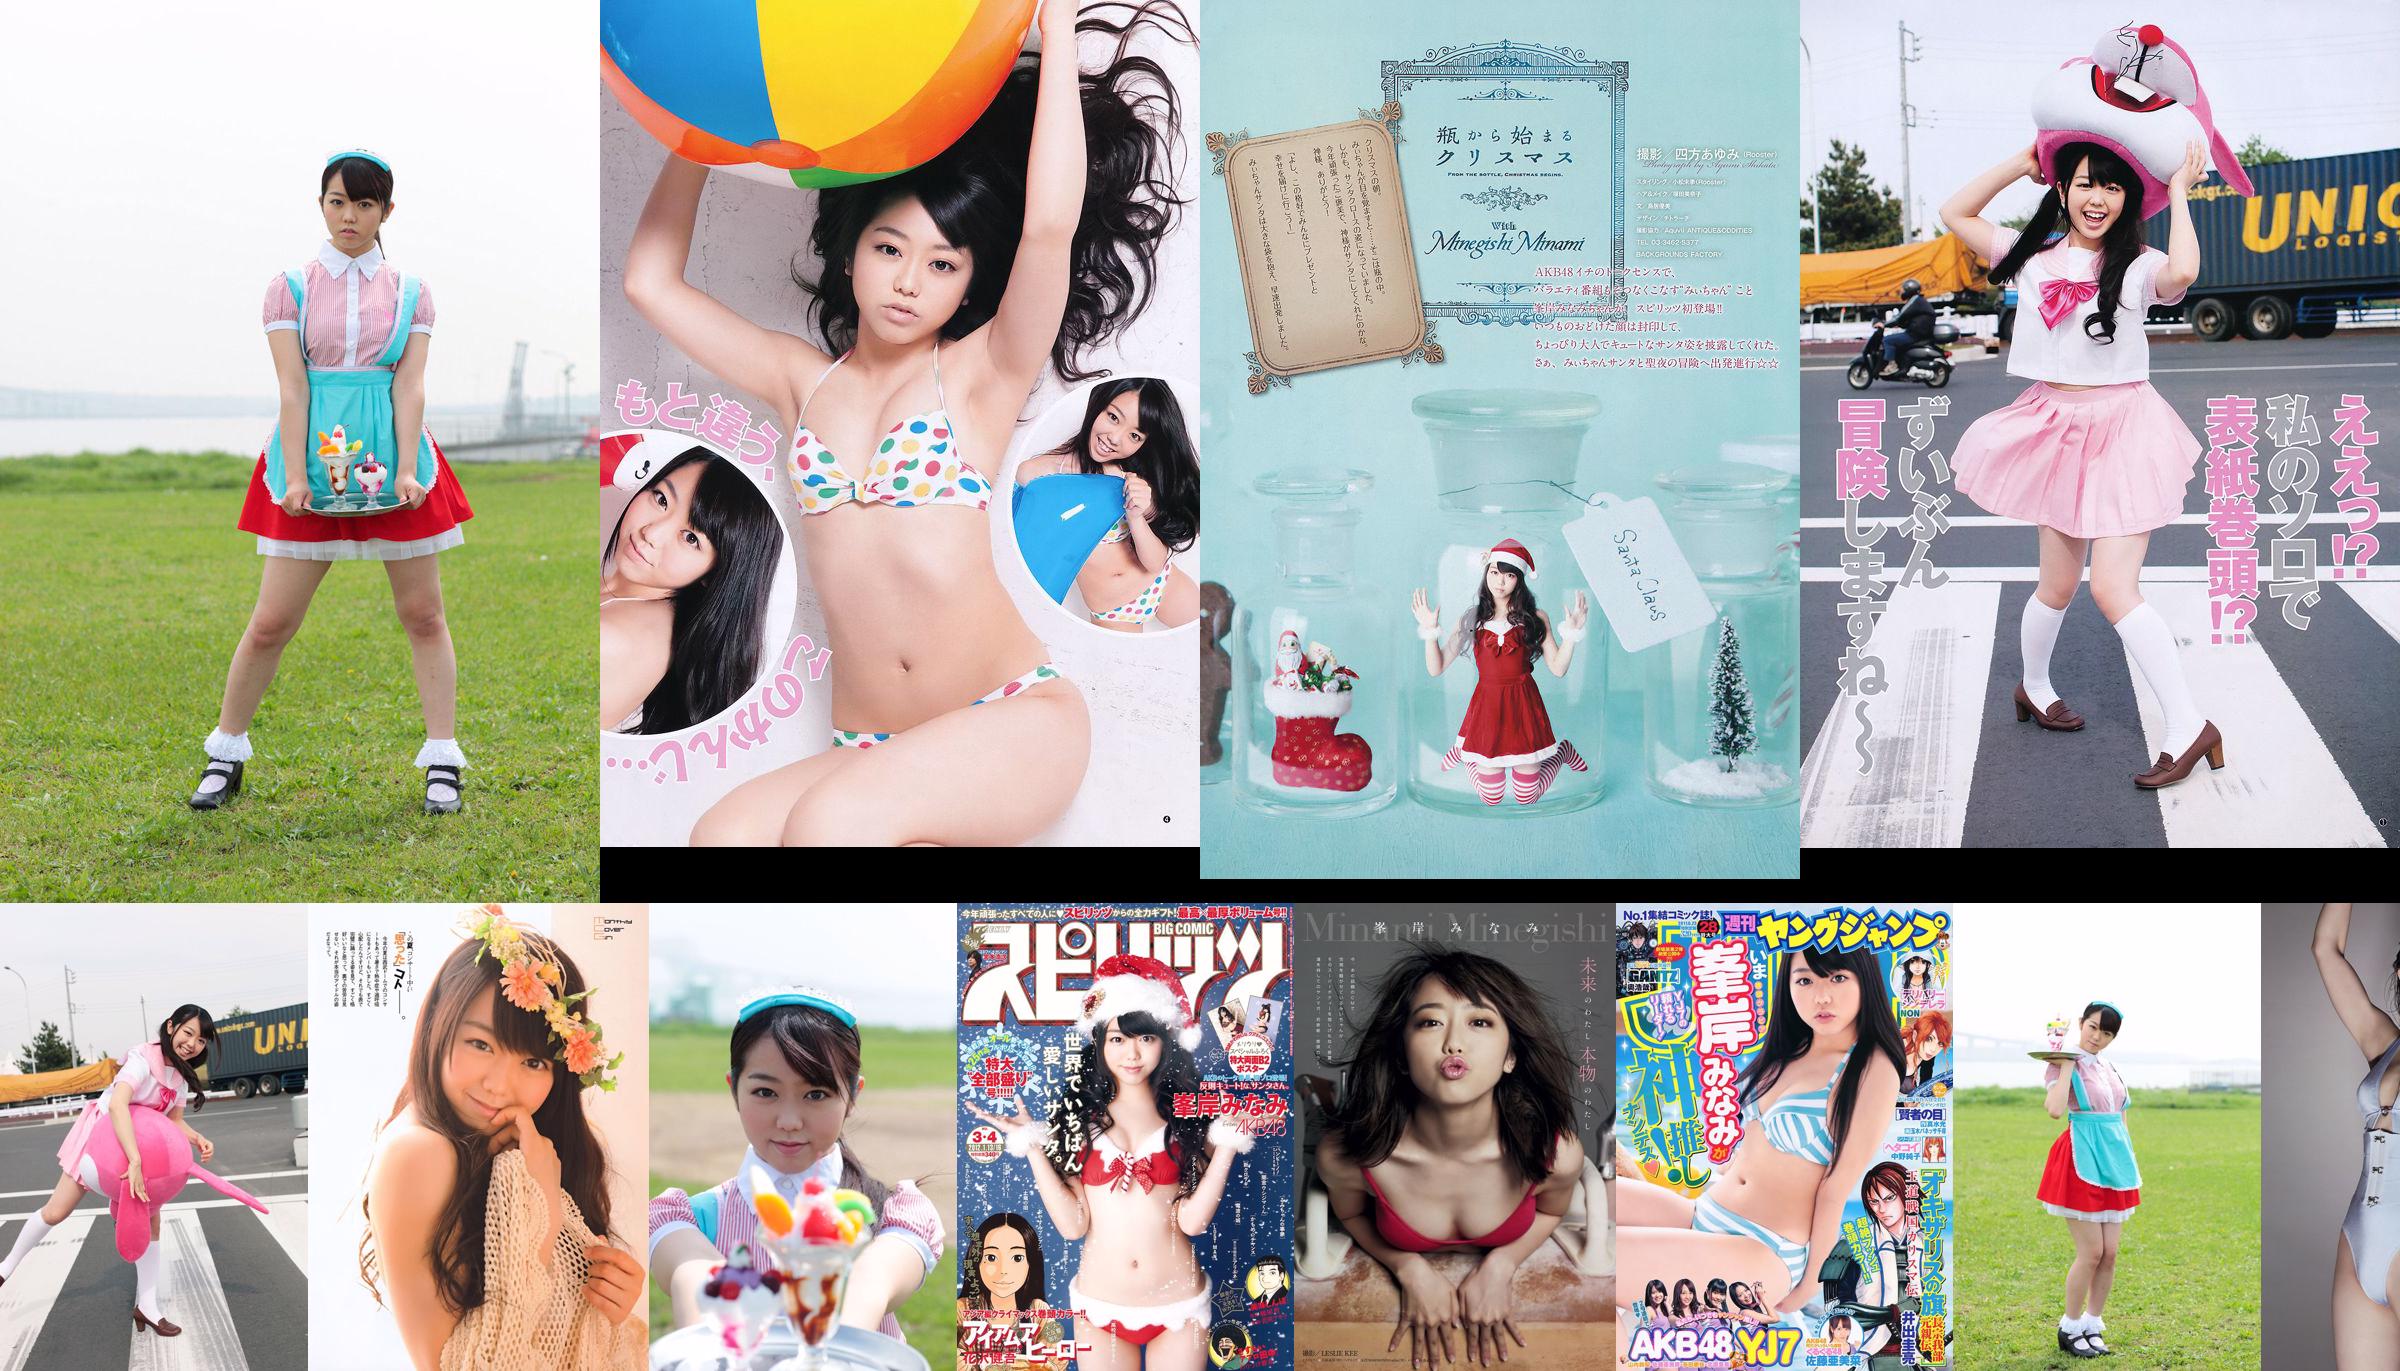 [Semangat Komik Besar Mingguan] Minaki Minegishi 2012 Majalah Foto No. 03-04 No.639688 Halaman 1